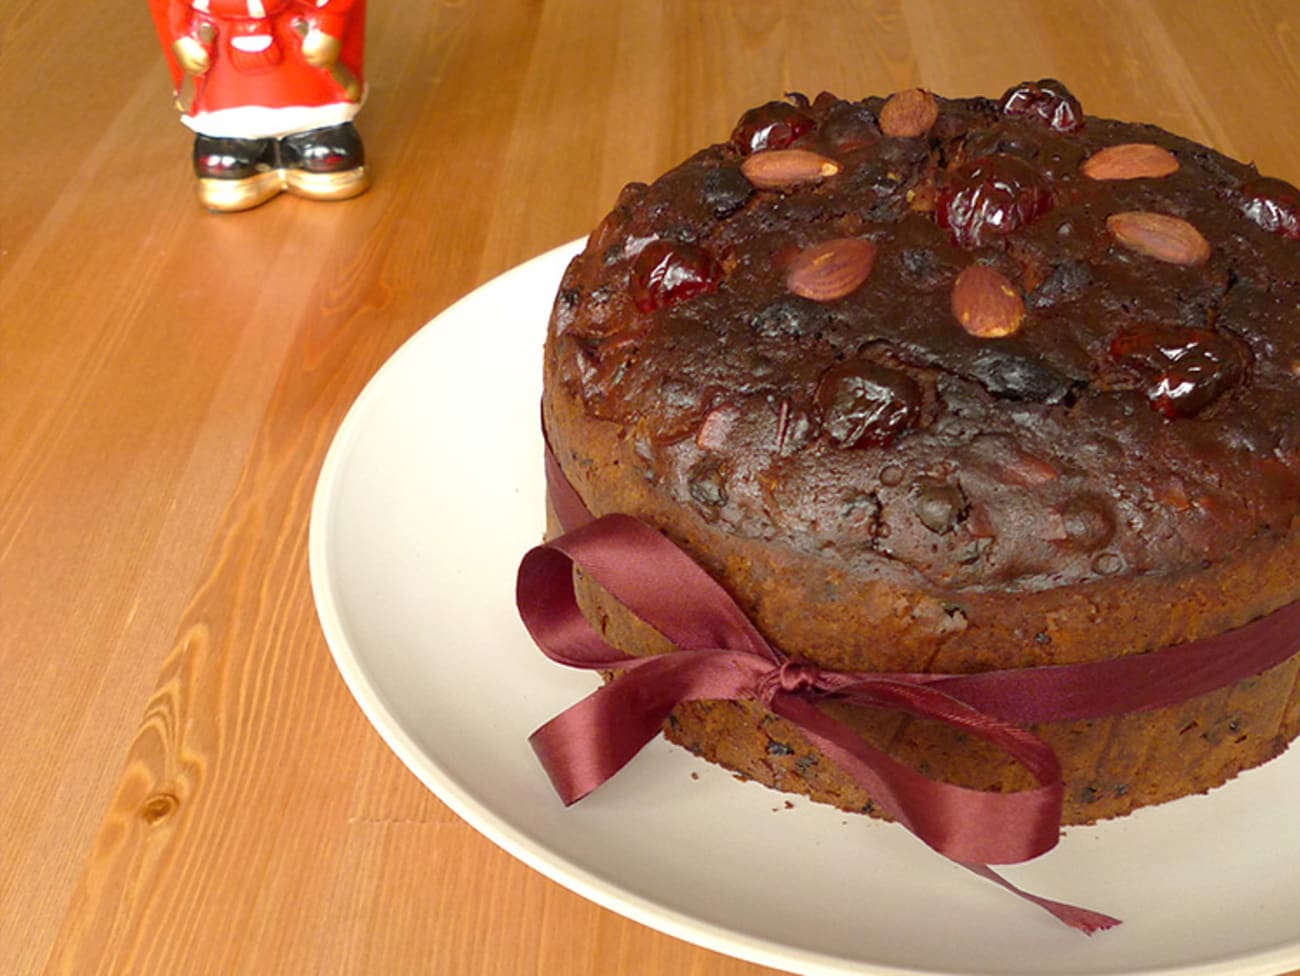 Recette Gâteau de Noël anglais (Christmas cake)